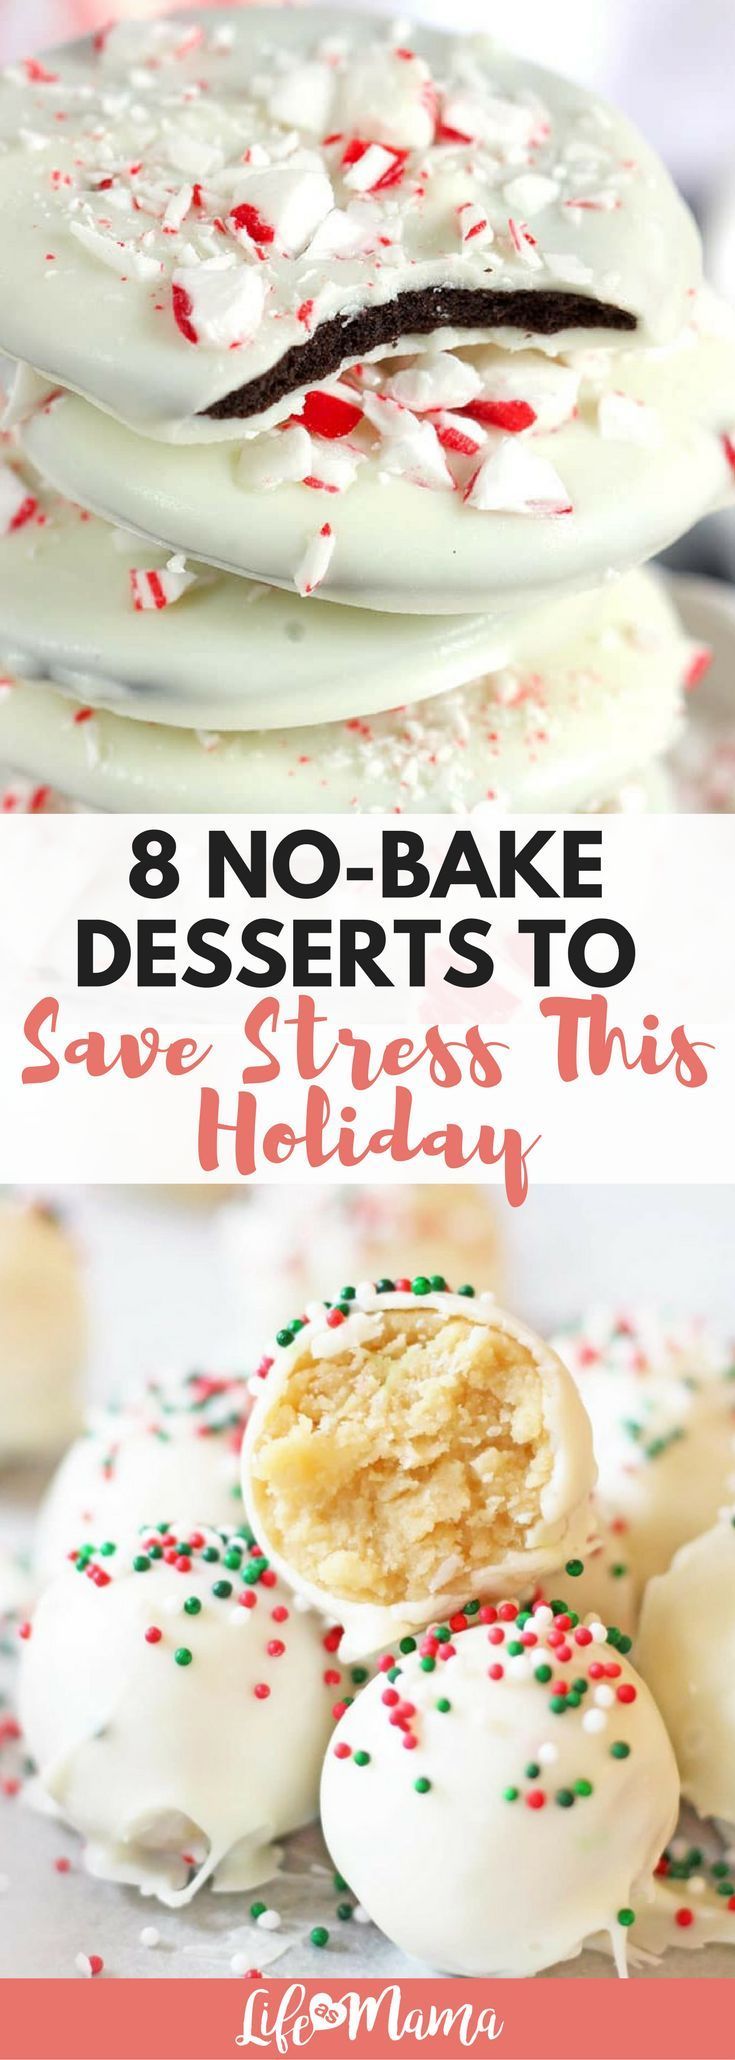 16 holiday Baking basket ideas